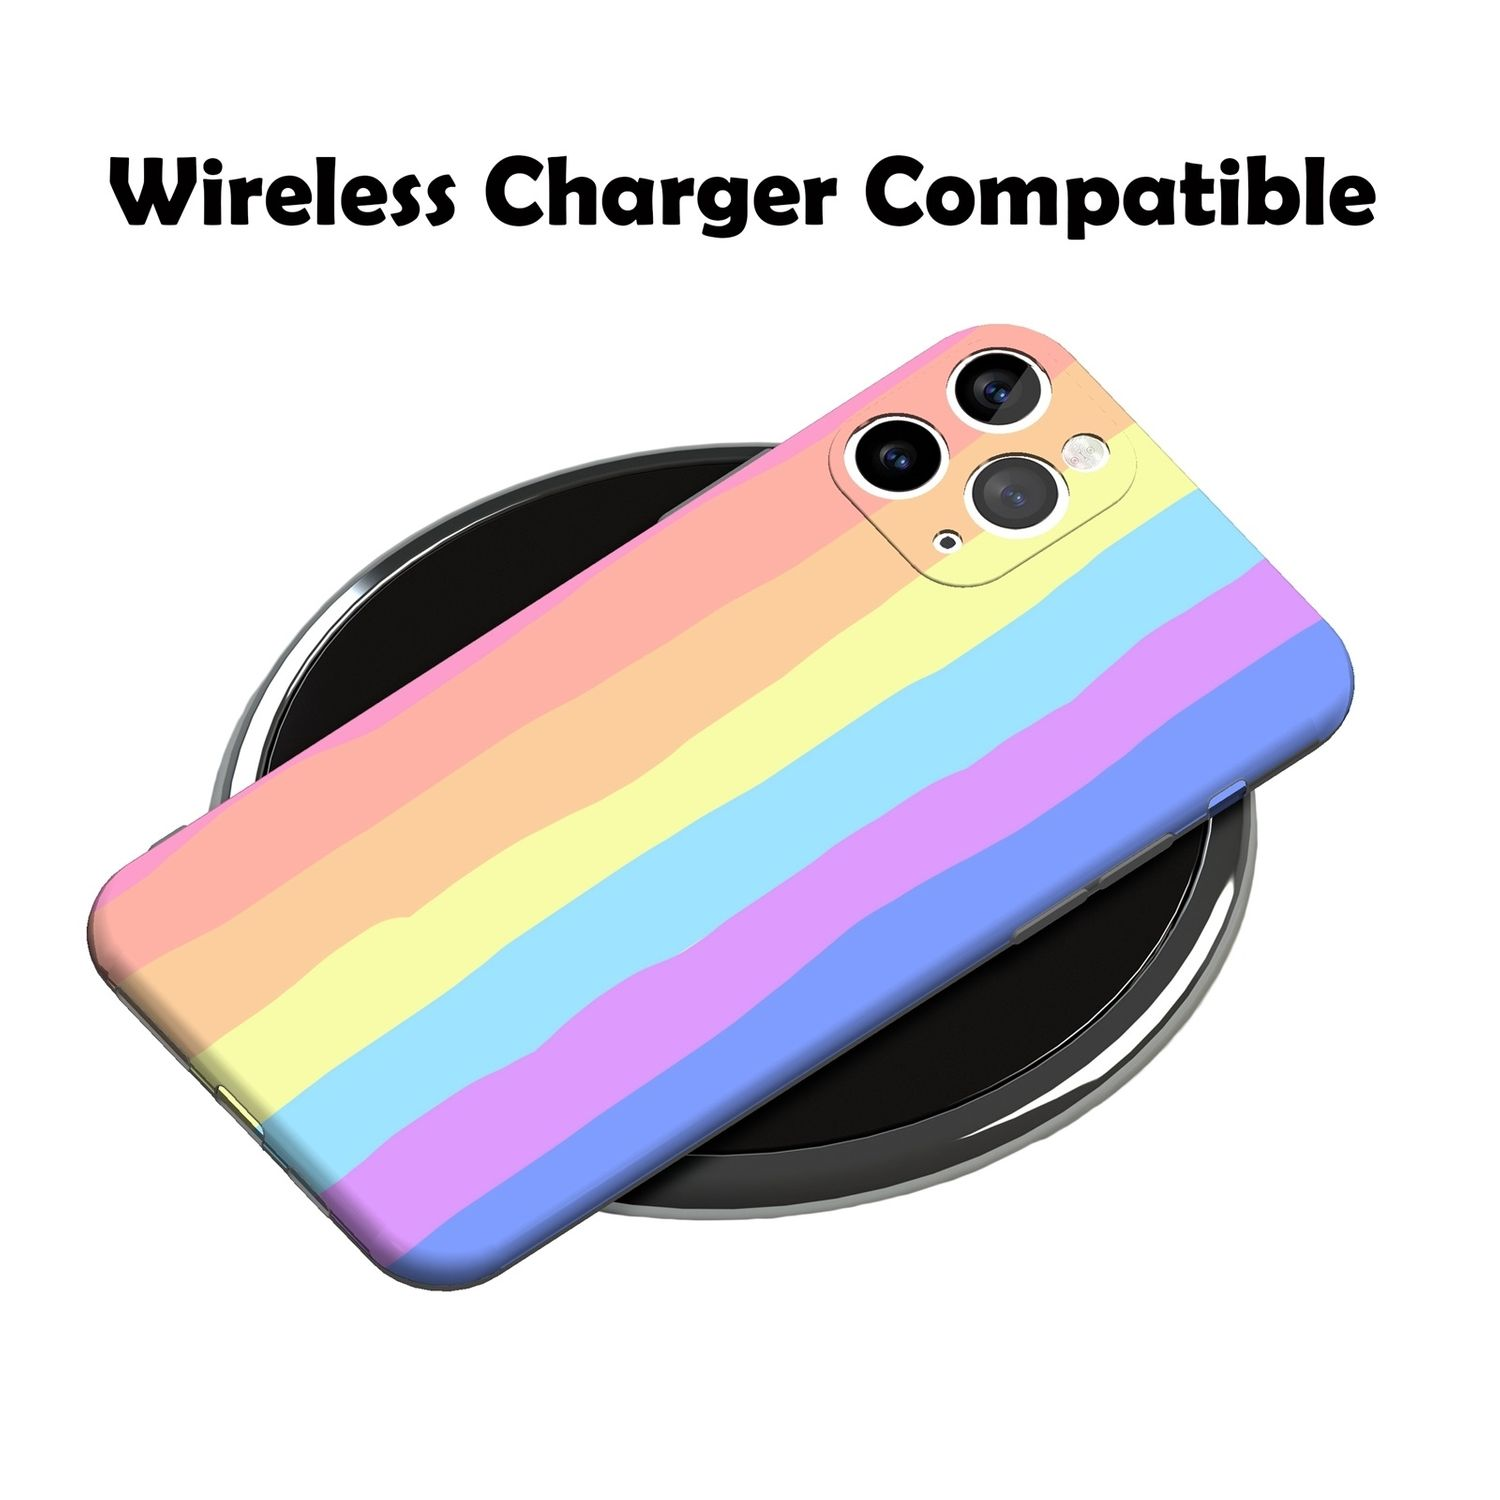 KÖNIG DESIGN Case, iPhone 11 Mehrfarbig Apple, Backcover, Pro